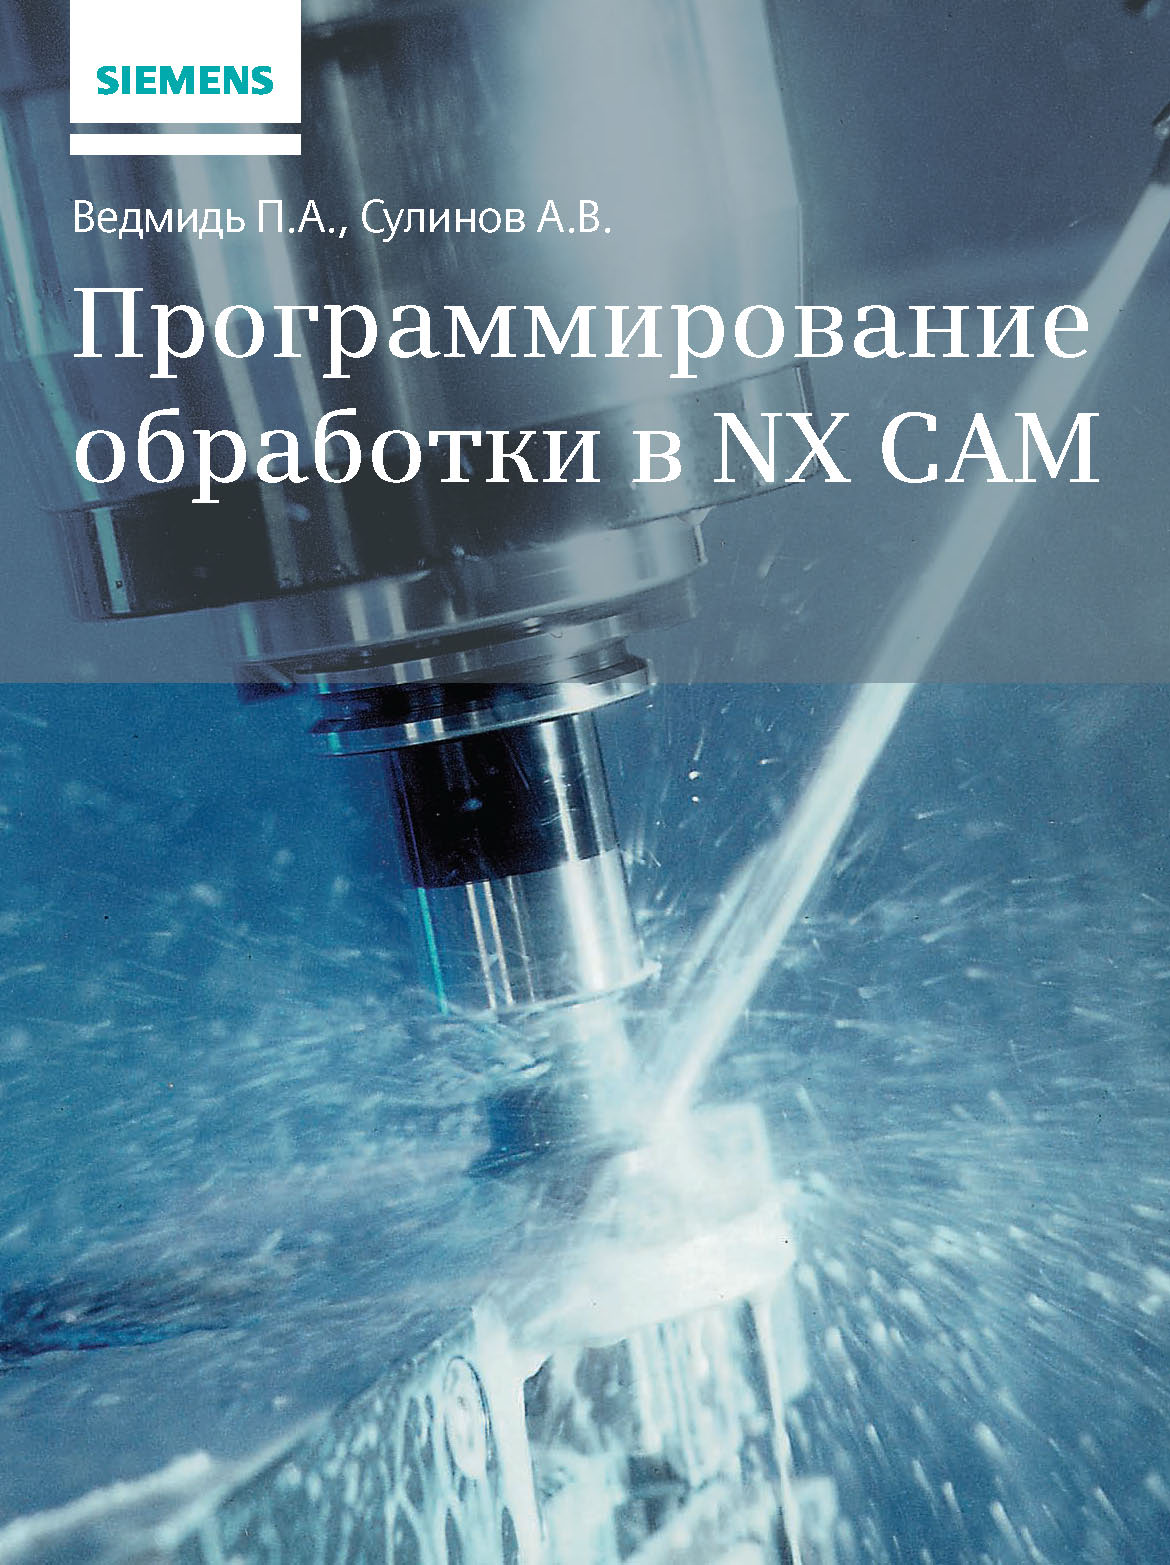 Книга  Программирование обработки в NX CAM созданная П. А. Ведмидь, А. В. Сулинов может относится к жанру машиностроение, программы. Стоимость электронной книги Программирование обработки в NX CAM с идентификатором 45670264 составляет 599.00 руб.